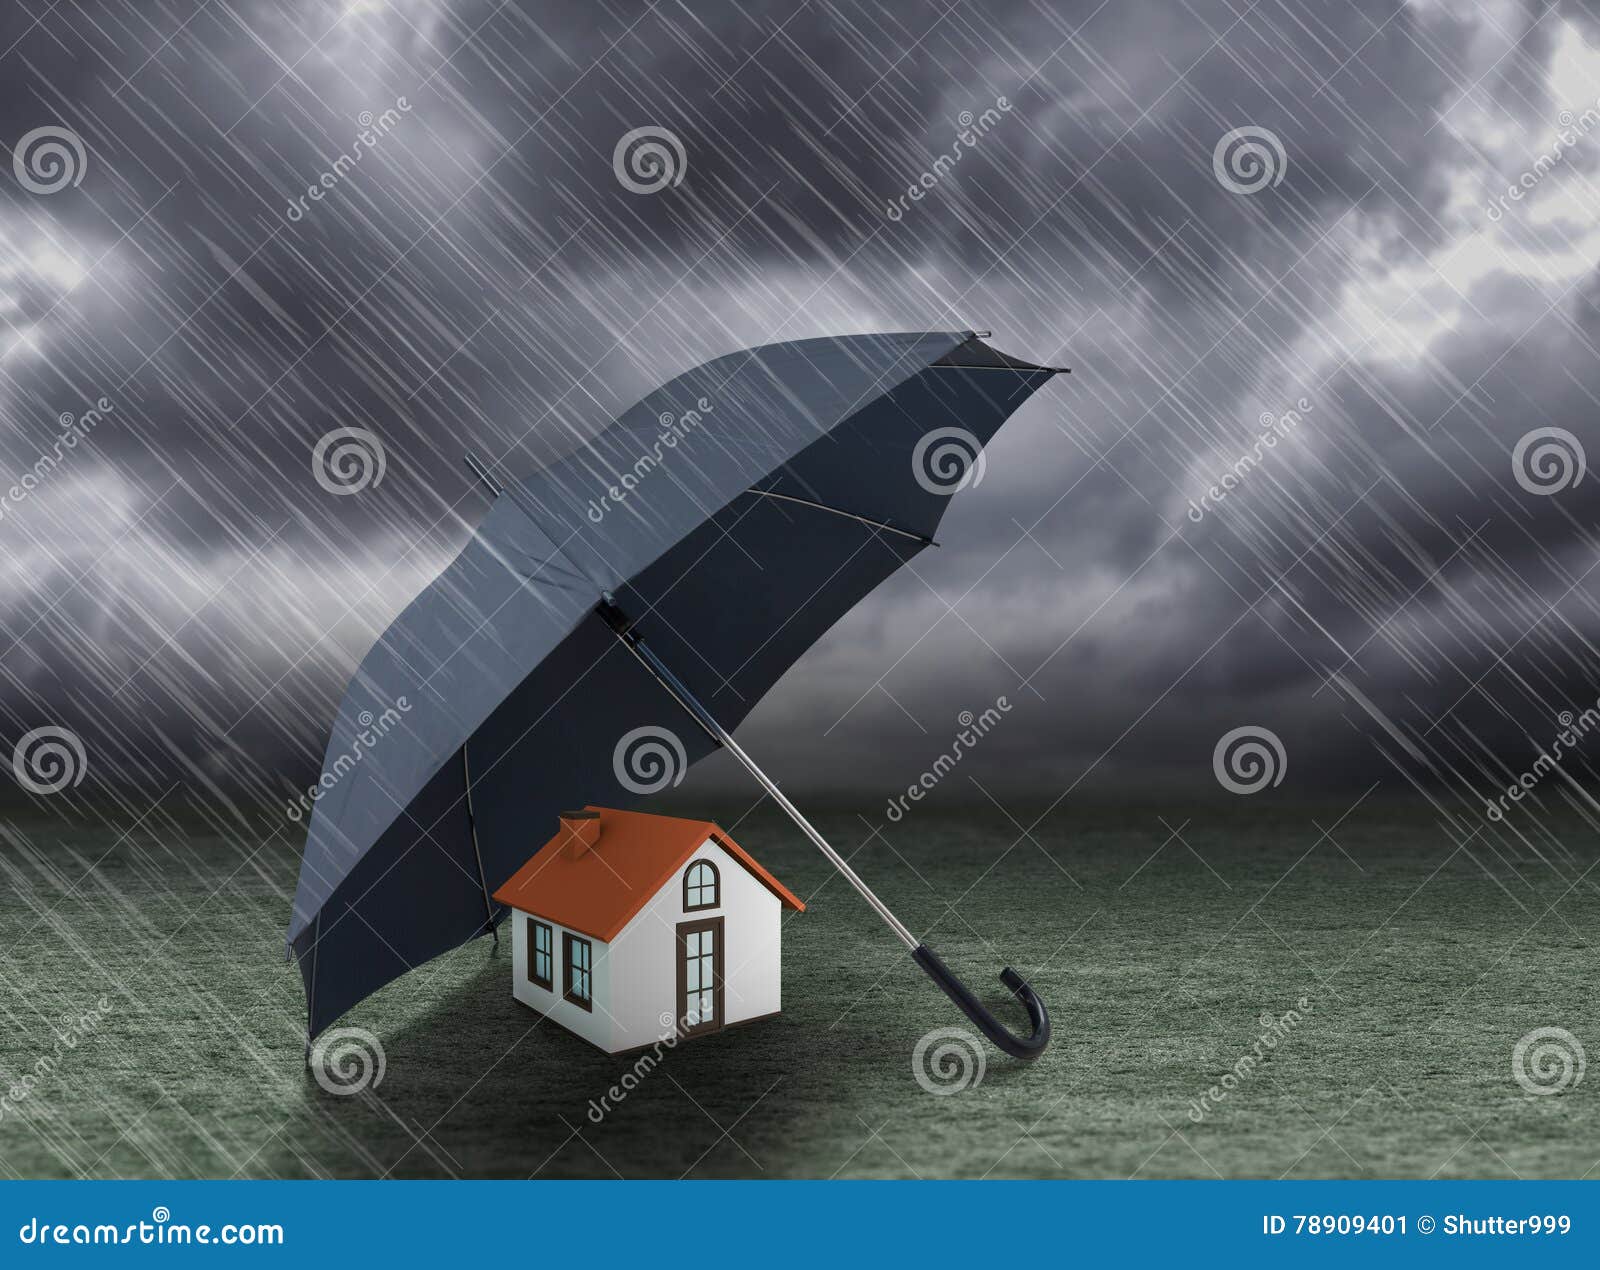 umbrella covering home under heavy rain